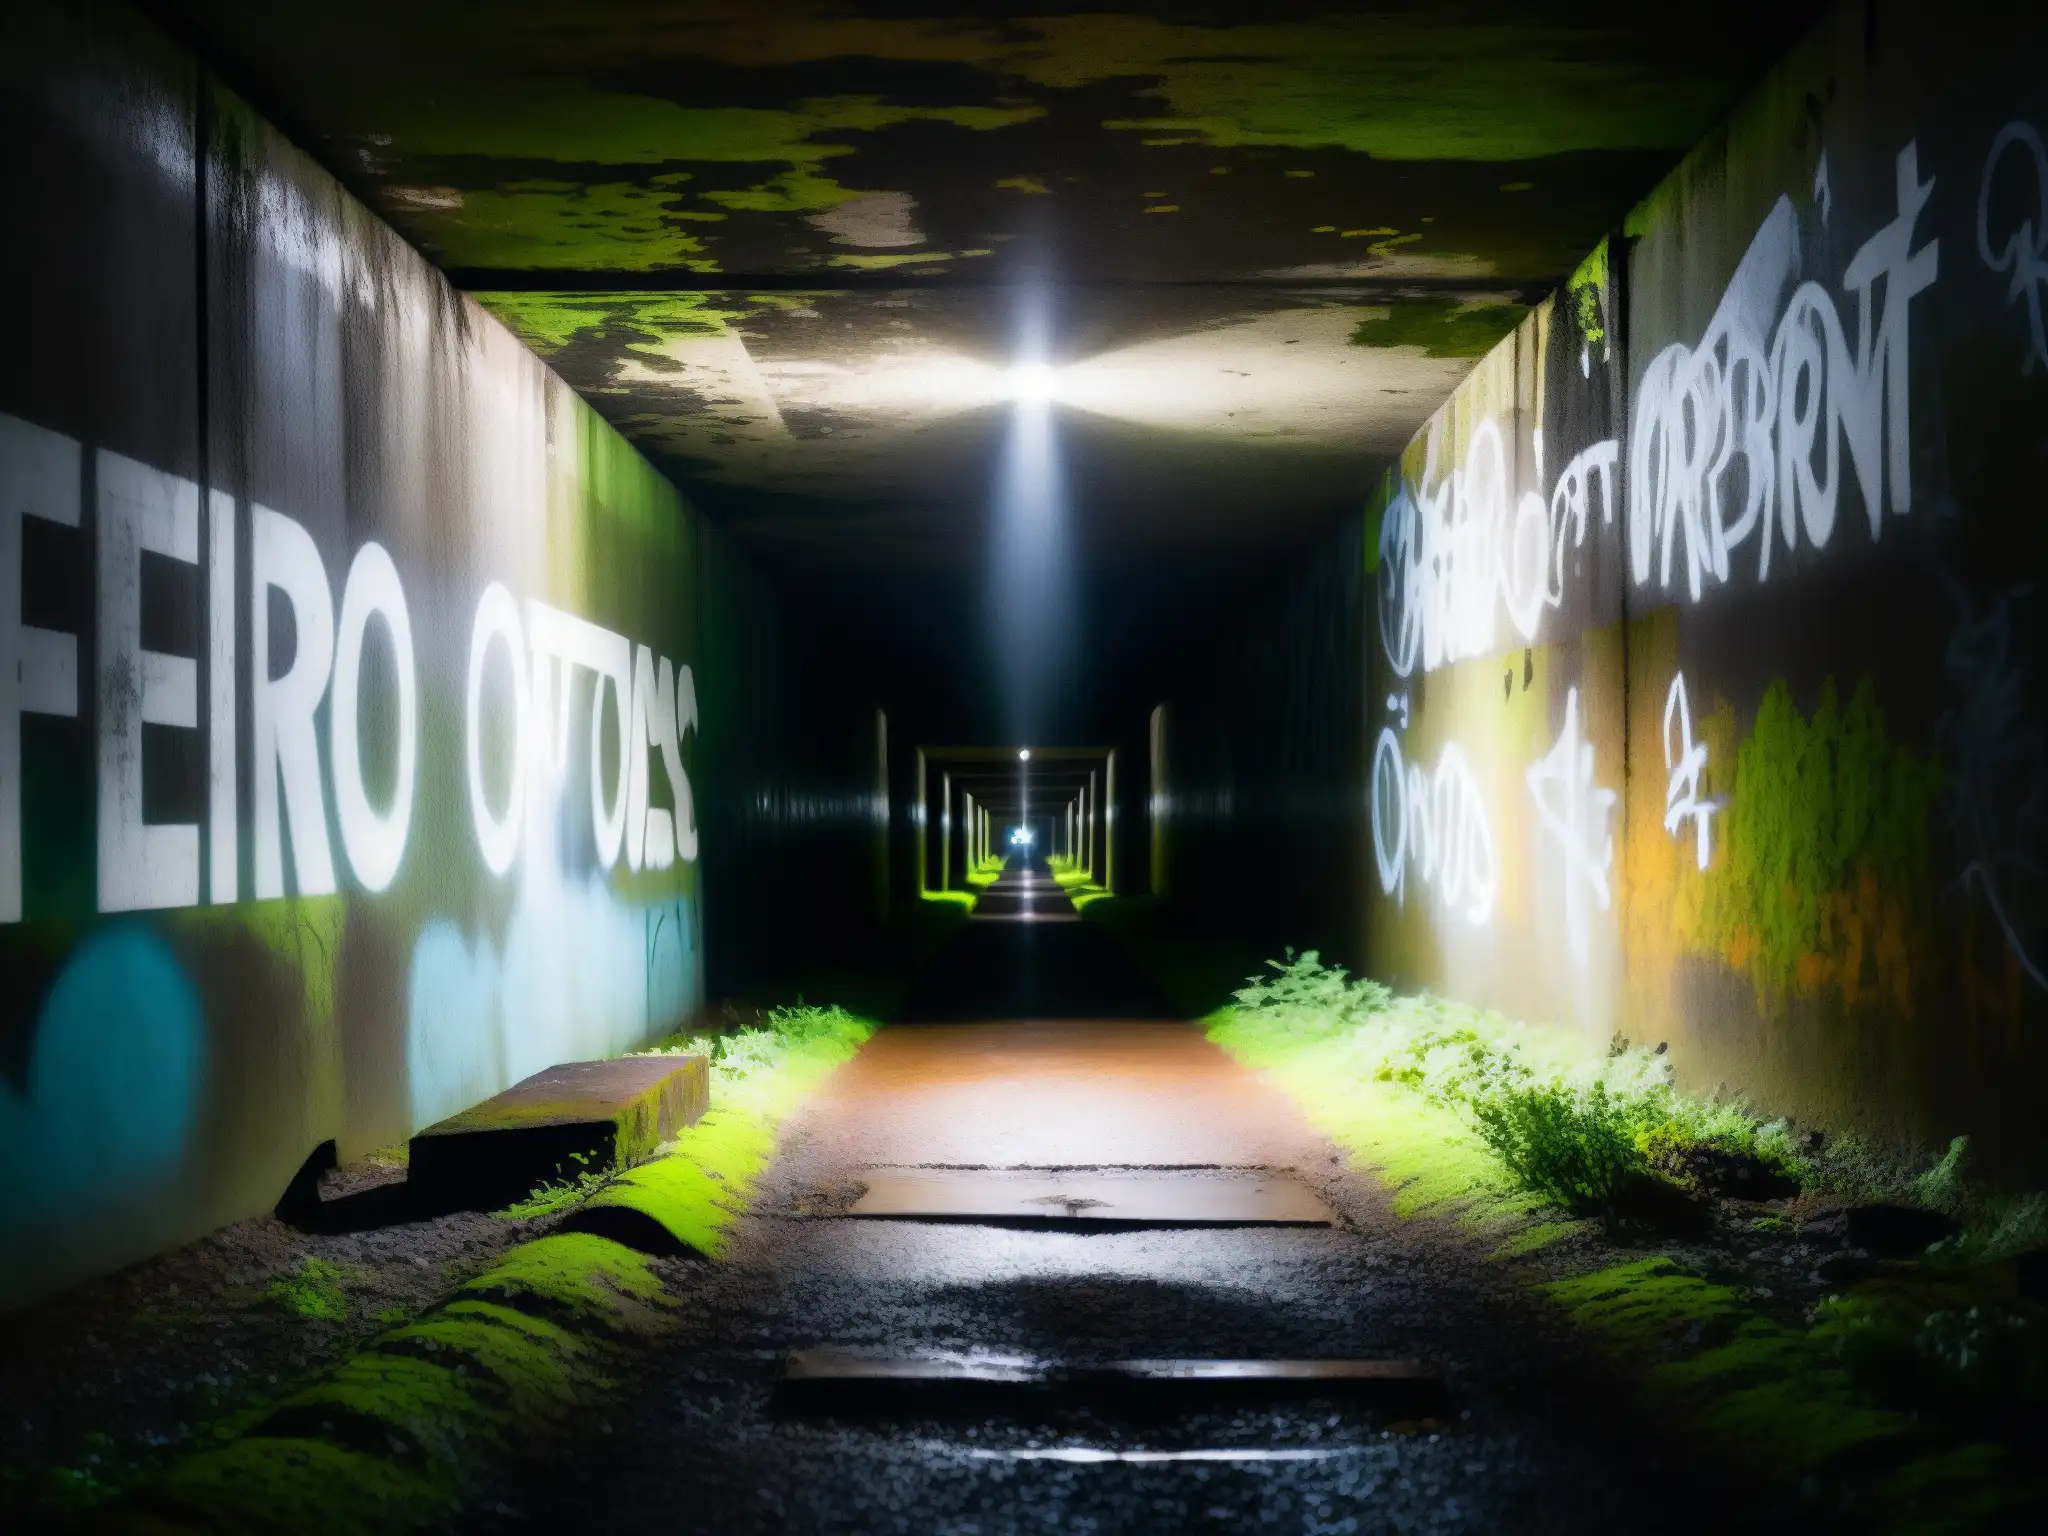 Un túnel oscuro y misterioso, iluminado por una linterna solitaria